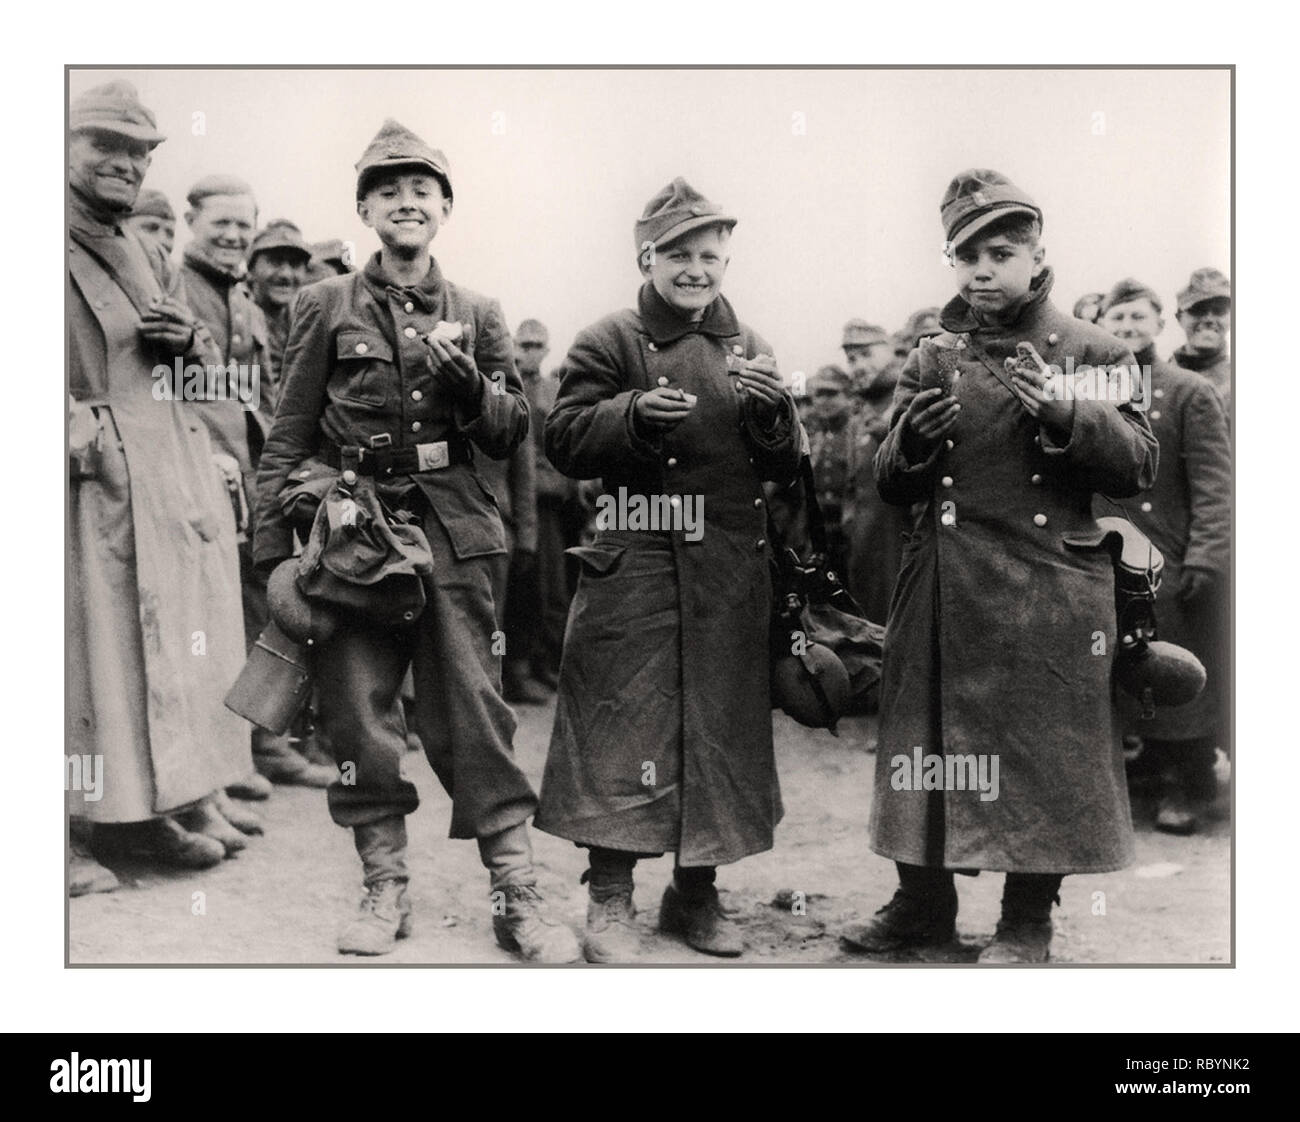 Gioventù Hitleriana esercito di quattordici anni adolescenti tedeschi, soldati dalla Gioventù Hitleriana, catturato da unità dell'esercito degli Stati Uniti in aprile 1945. Berstadt, provincia di Hessen, Germania Data: aprile 1945 Foto Stock